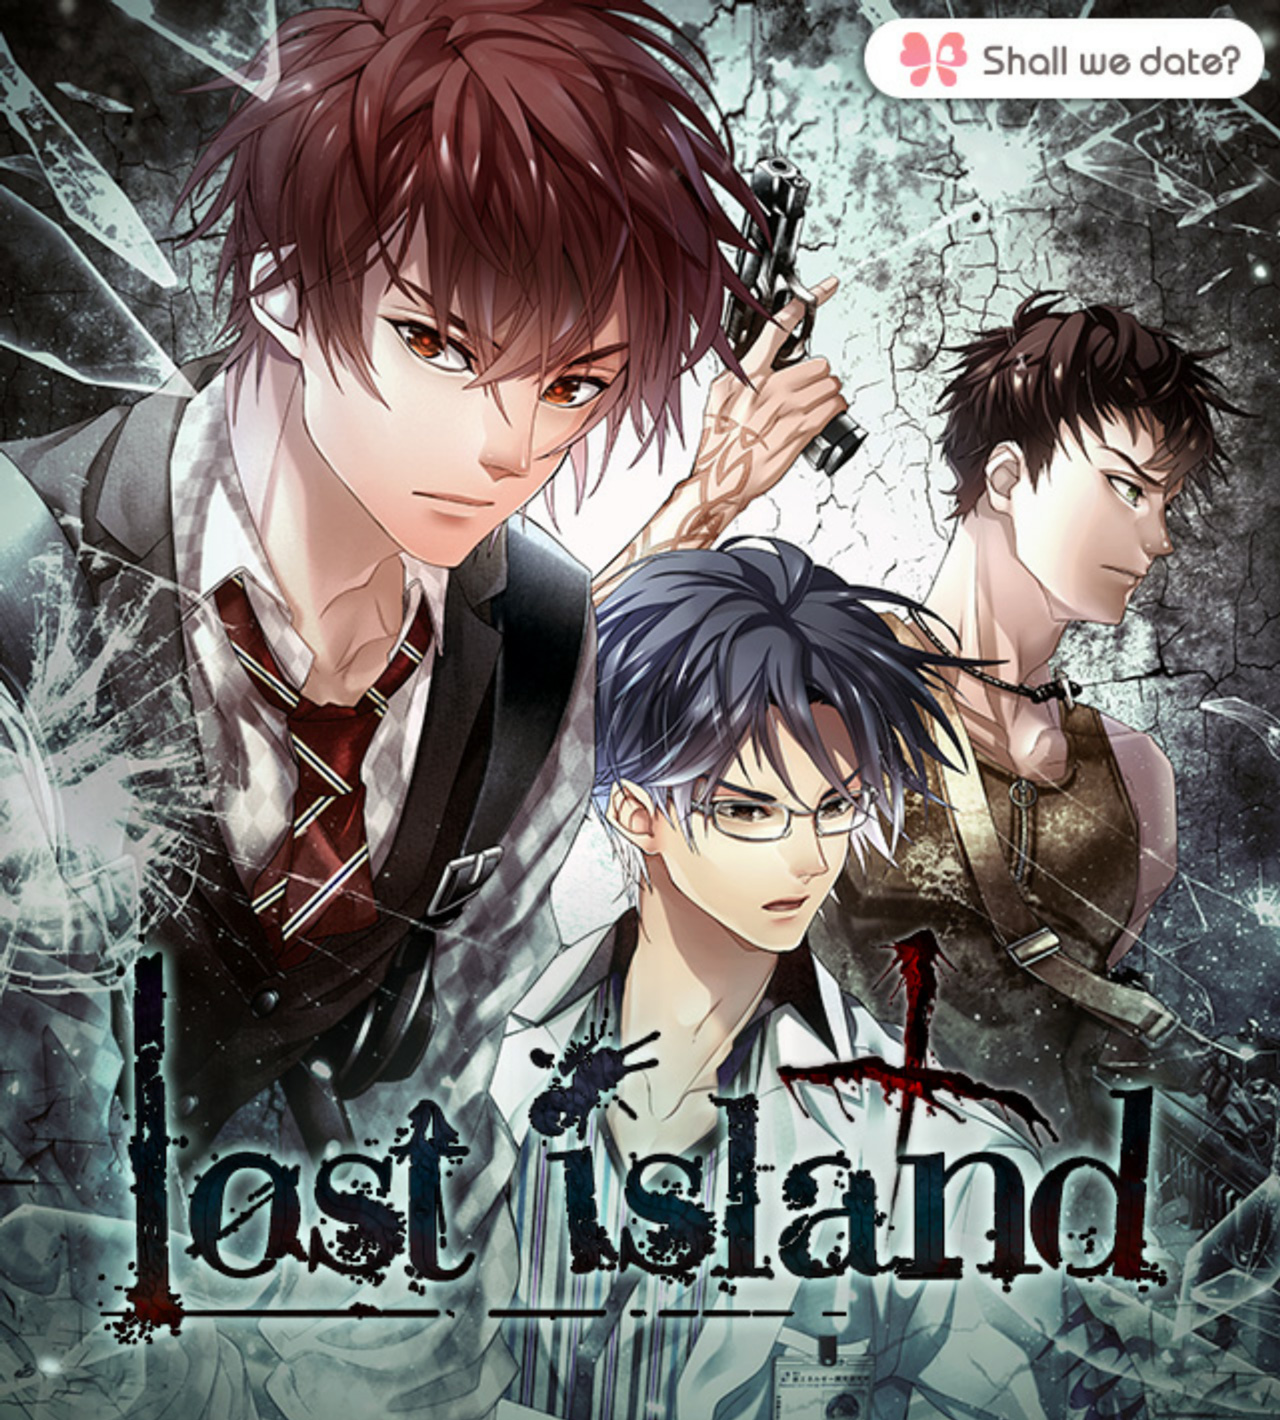 jaquette du jeu vidéo Lost Island Shall we date